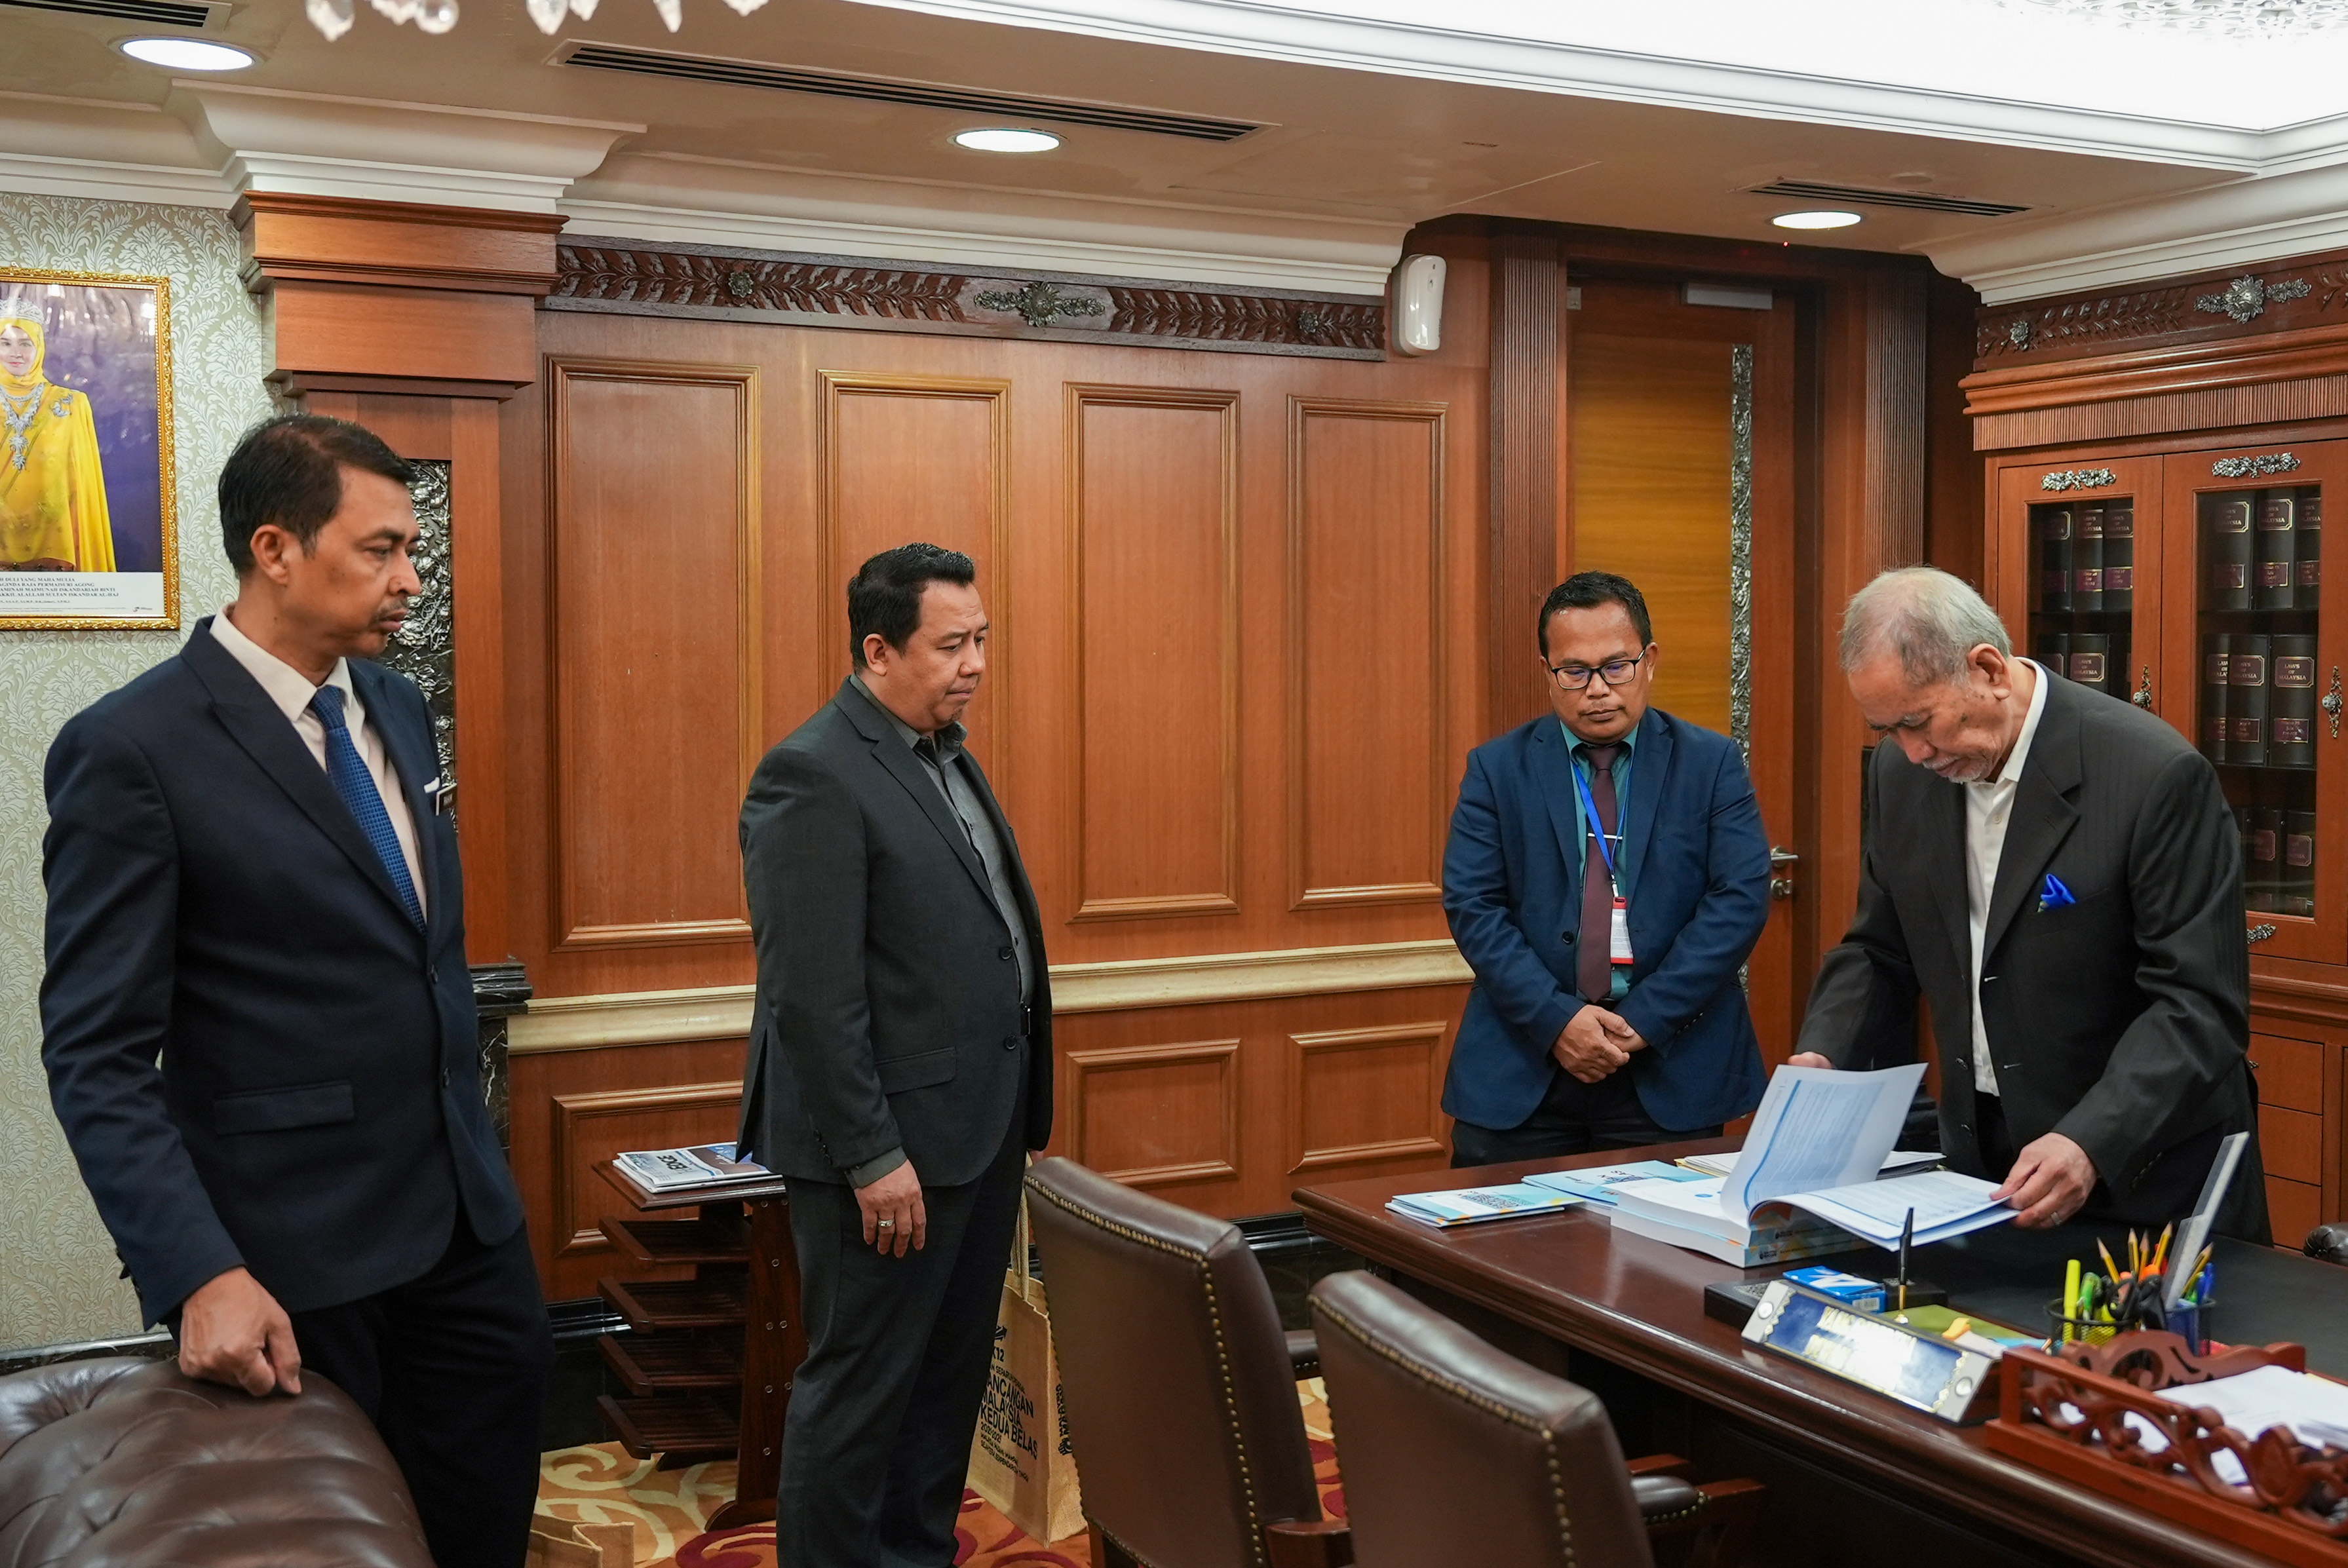 Sesi penyerahan buku Kajian Separuh Penggal Rancangan Malaysia Kedua Belas (KSP RMKe-12) daripada YBrs Encik Ramlee Amat, Pengarah Bahagian Penyelarasan, Kawalan dan Pemantauan (BPKP), Kementerian Ekonomi kepada YB Senator Tan Sri Dr. Haji Wan Junaidi Tua